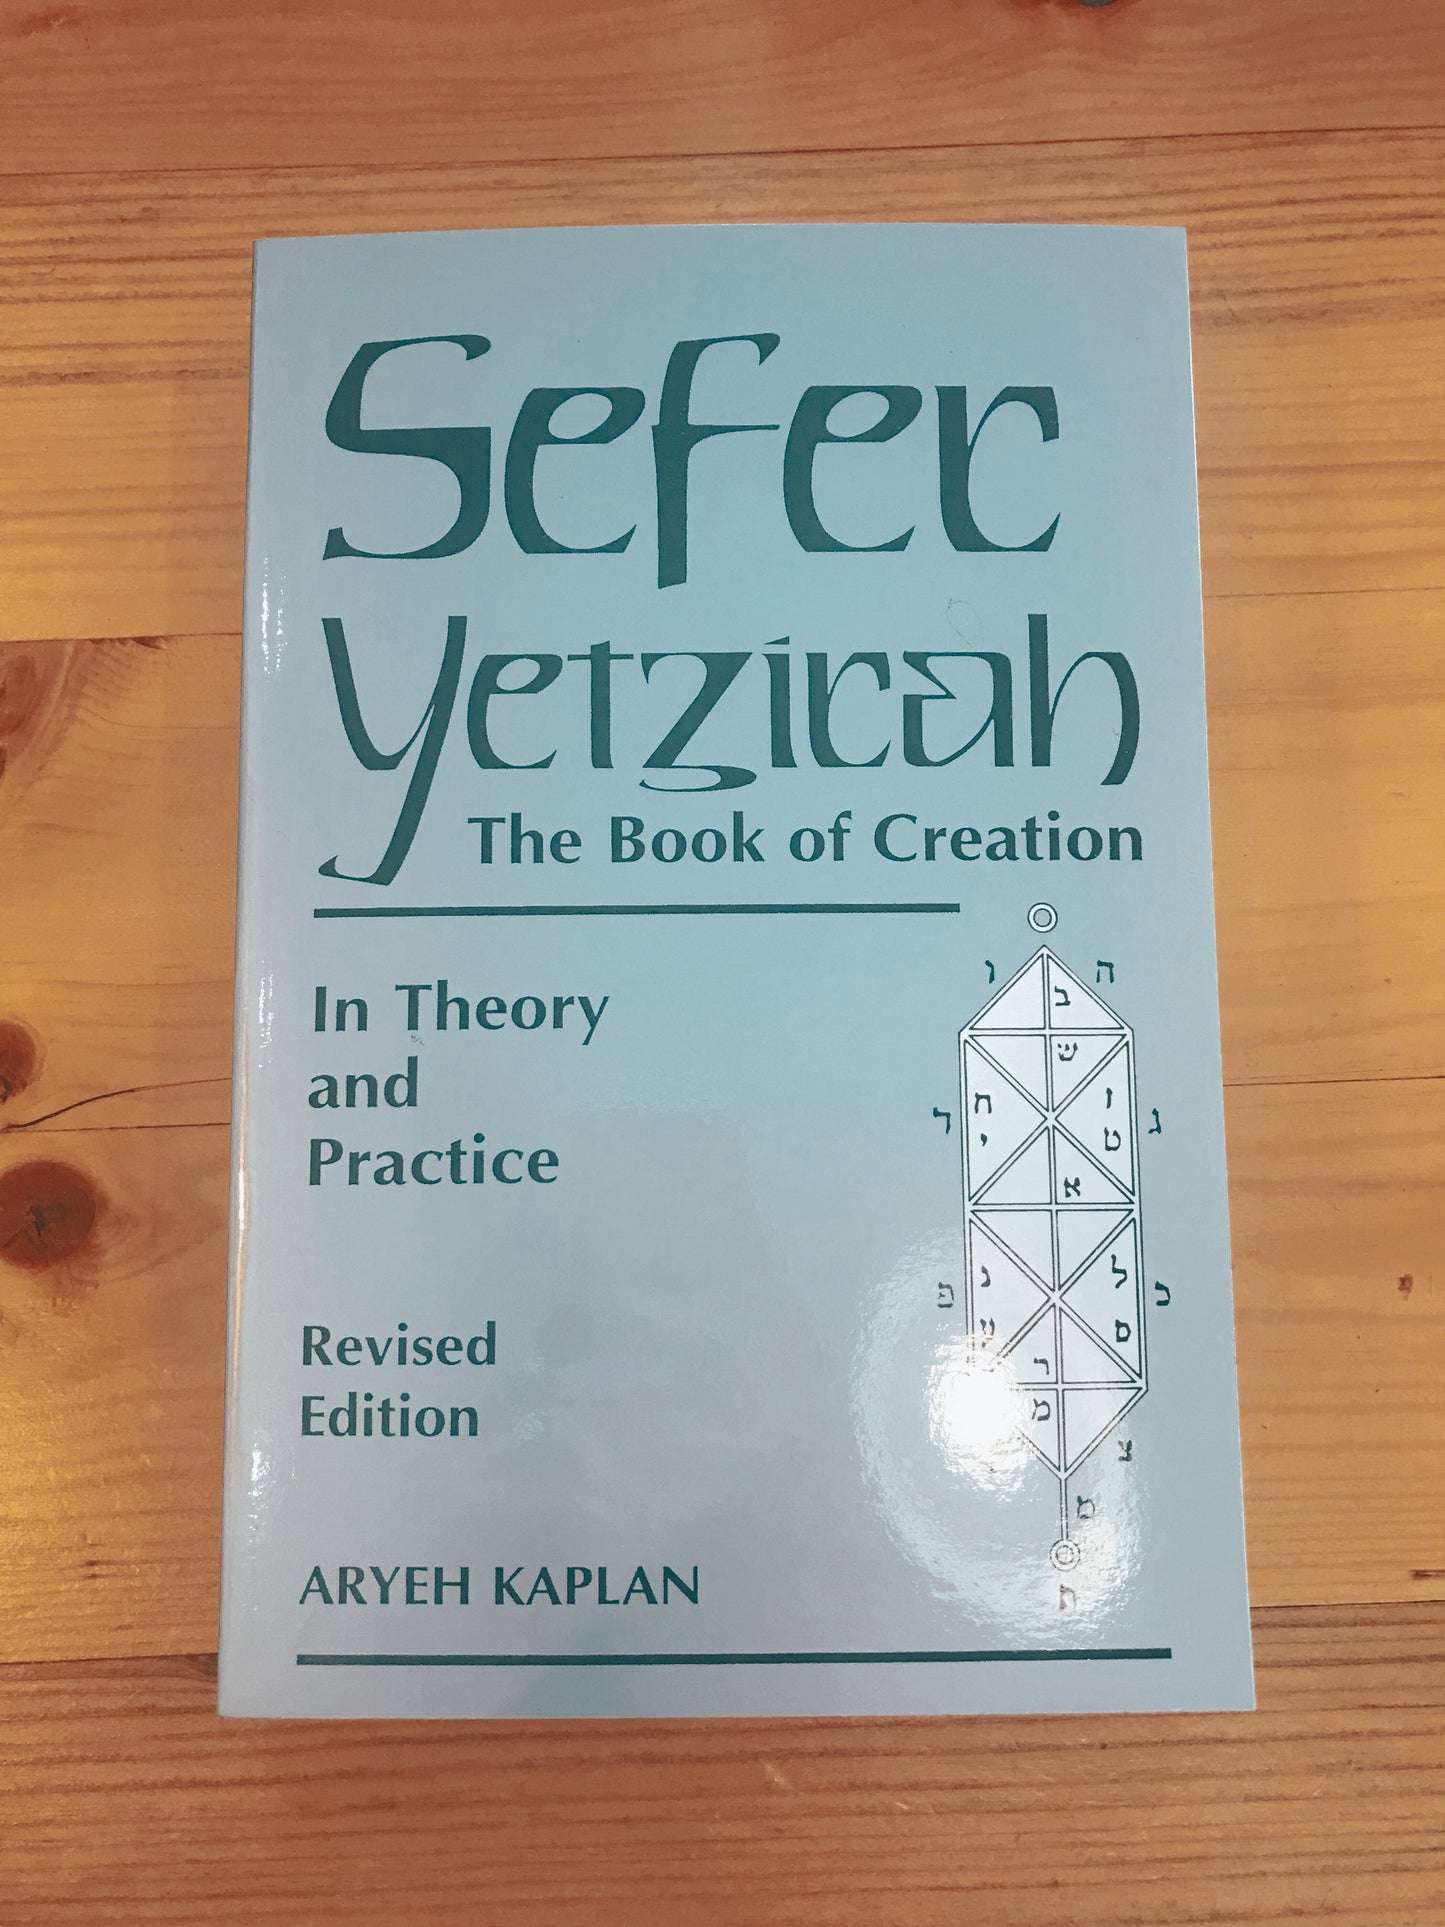 Sefer Yetzirah (Book of Creation) by Aryeh Kaplan